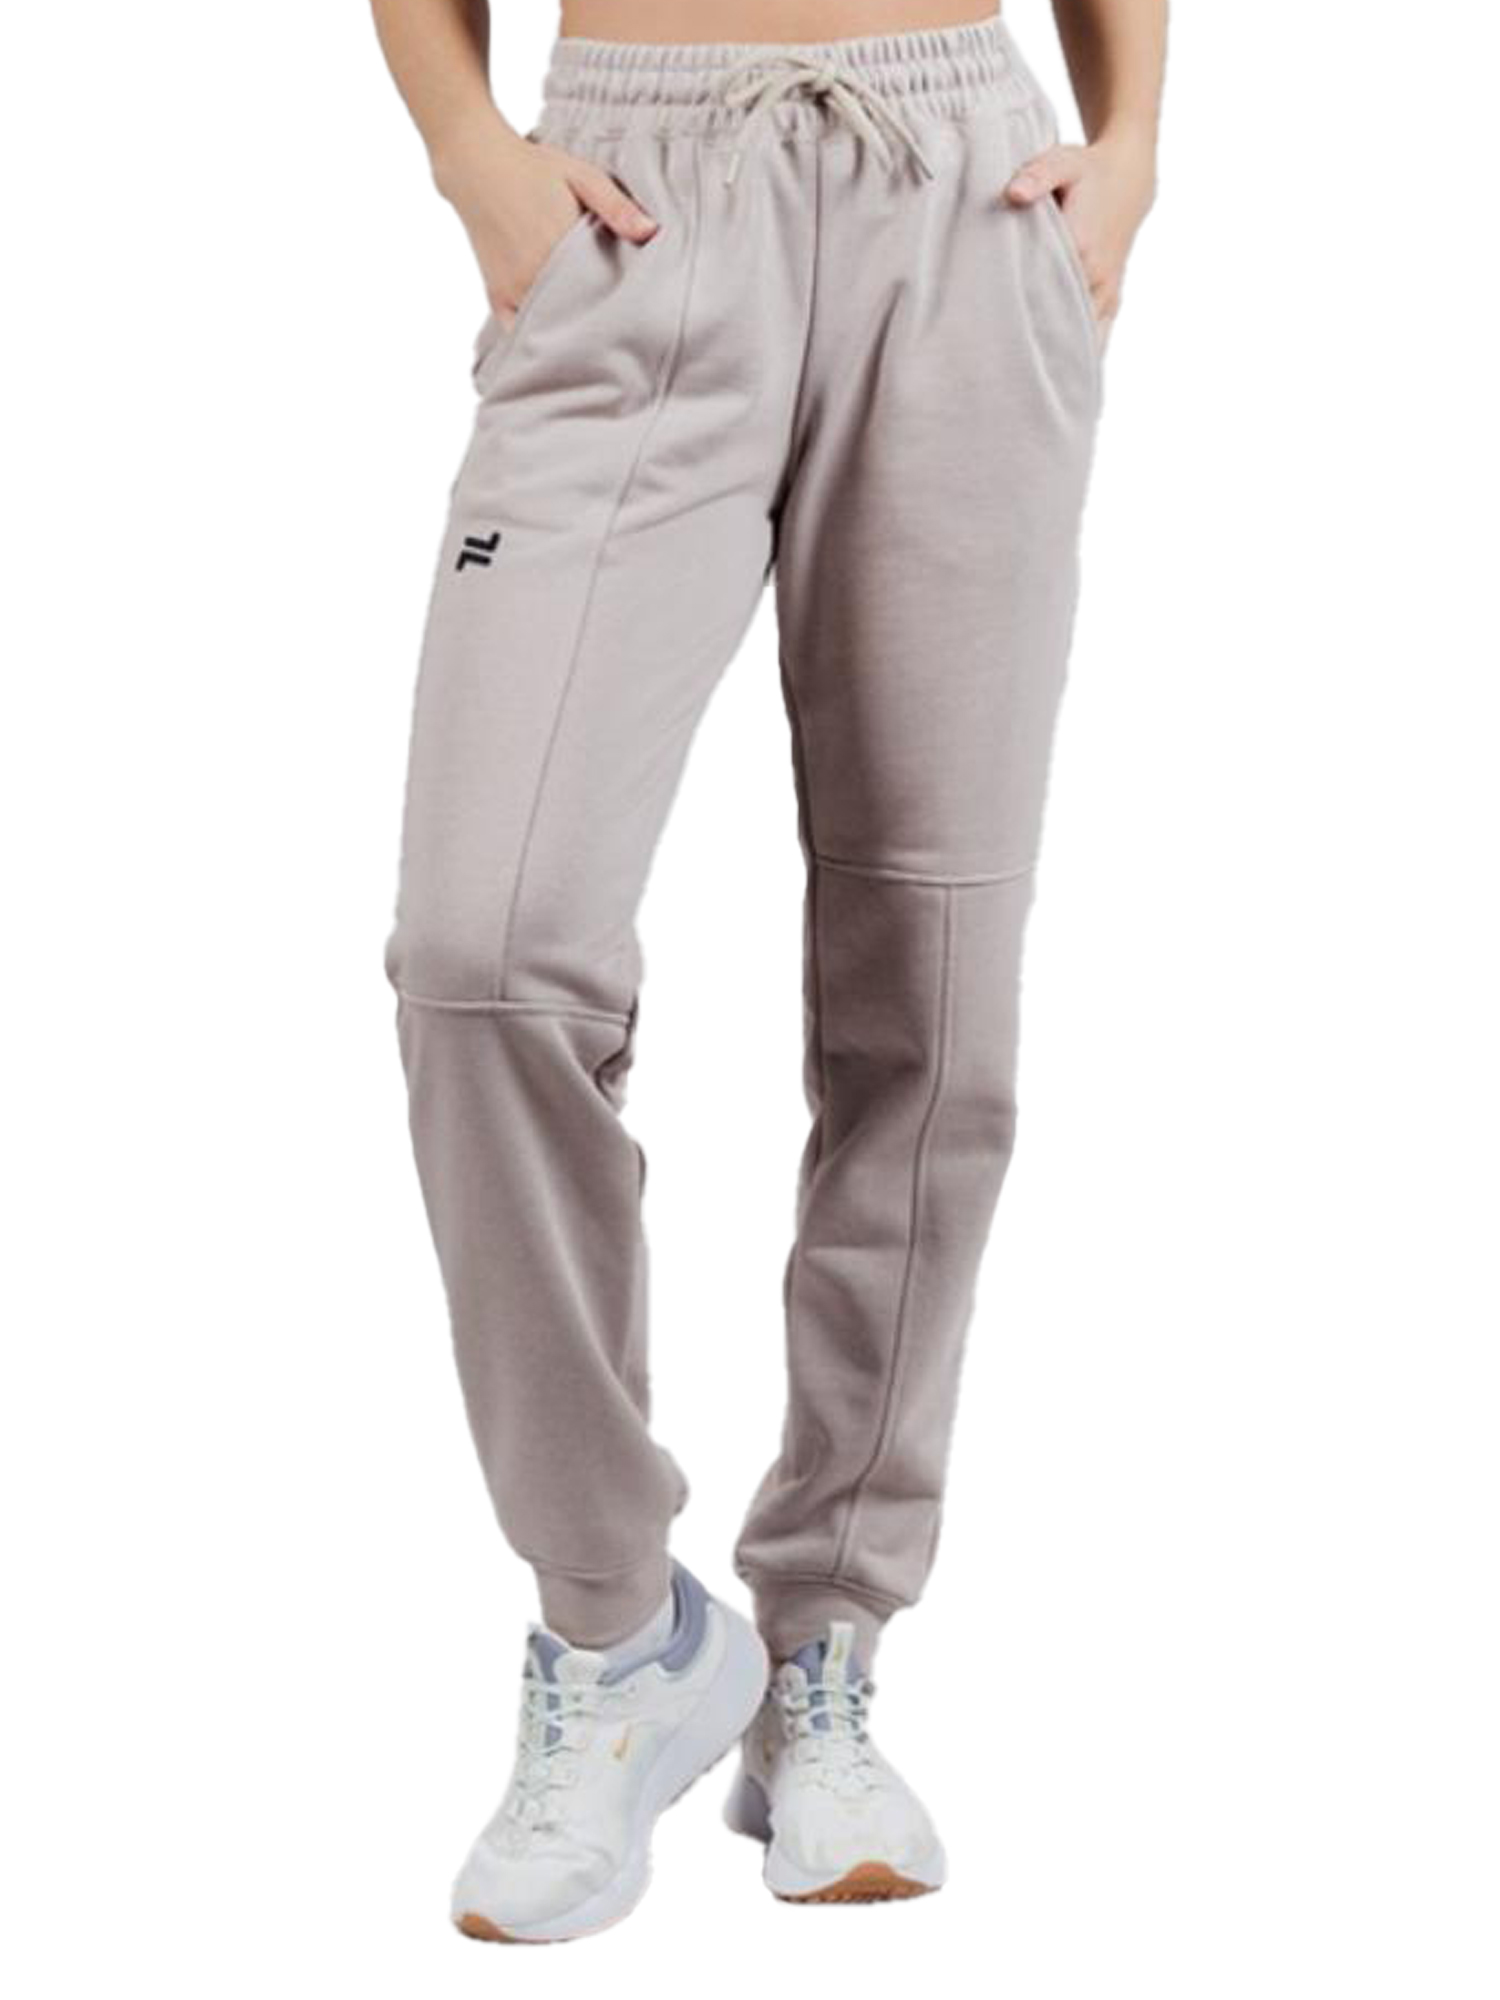 Спортивные брюки женские NordSki Outfit W бежевые 50